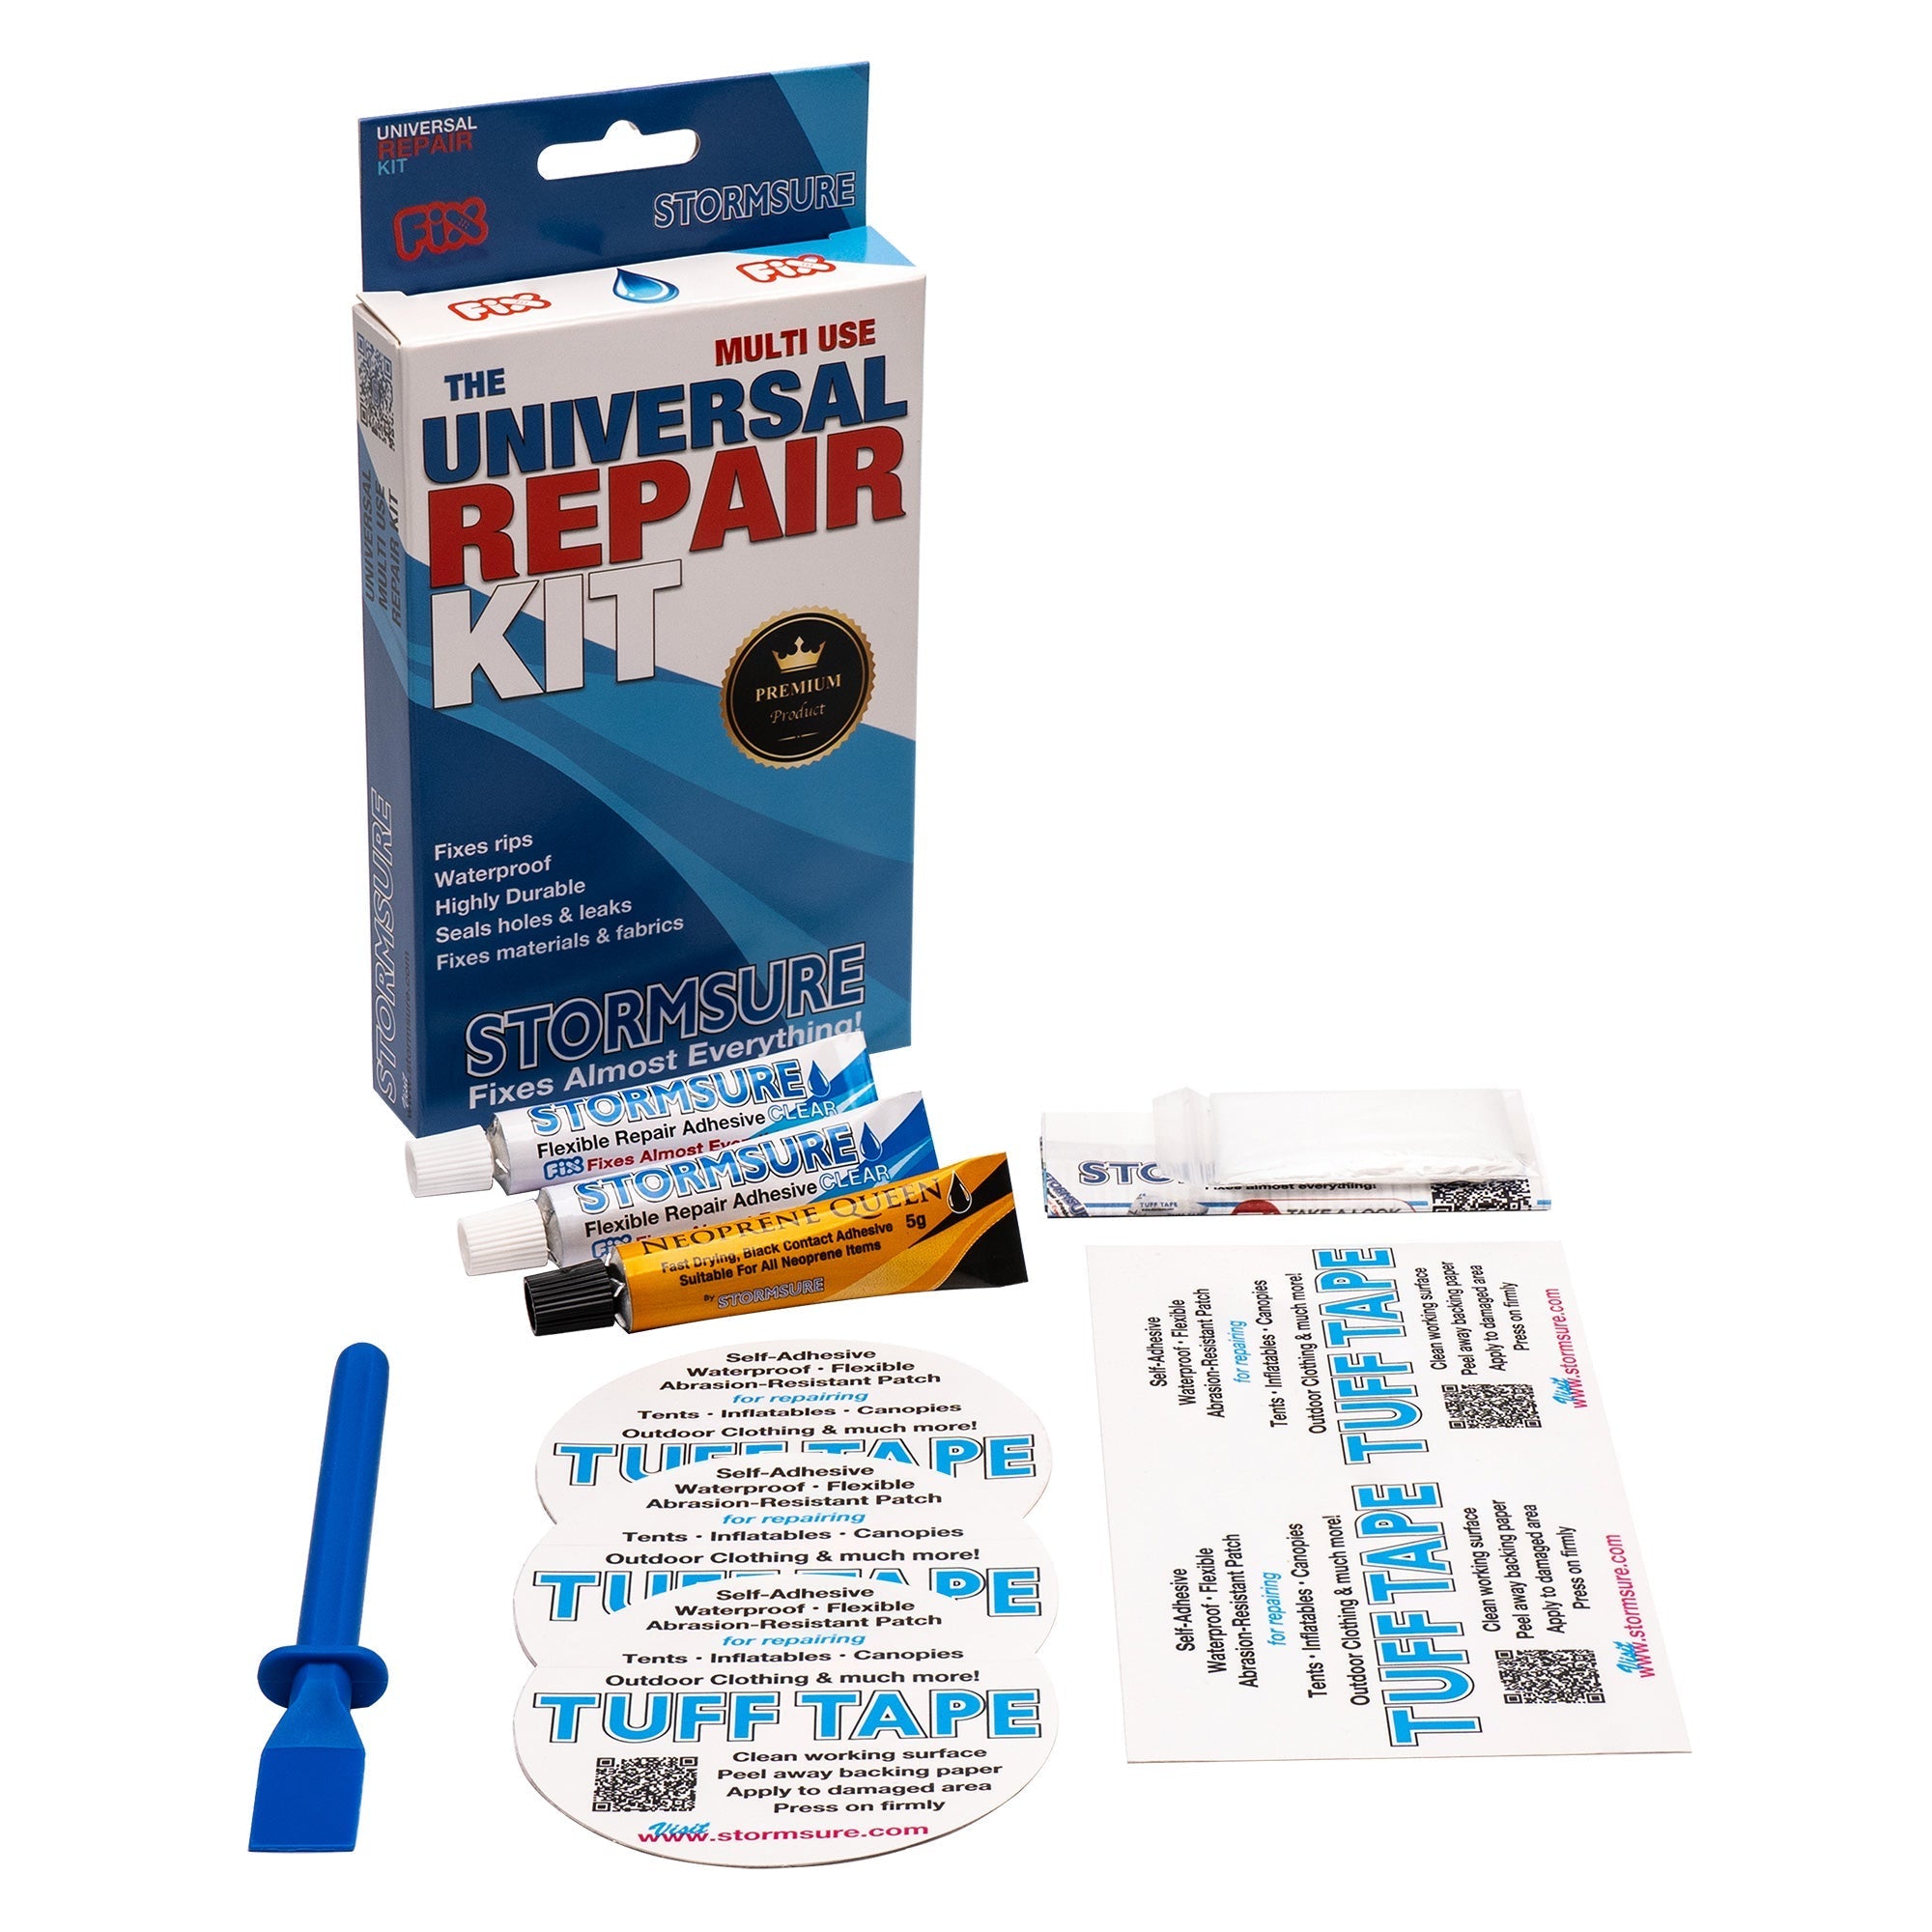 Universal Repair Kit